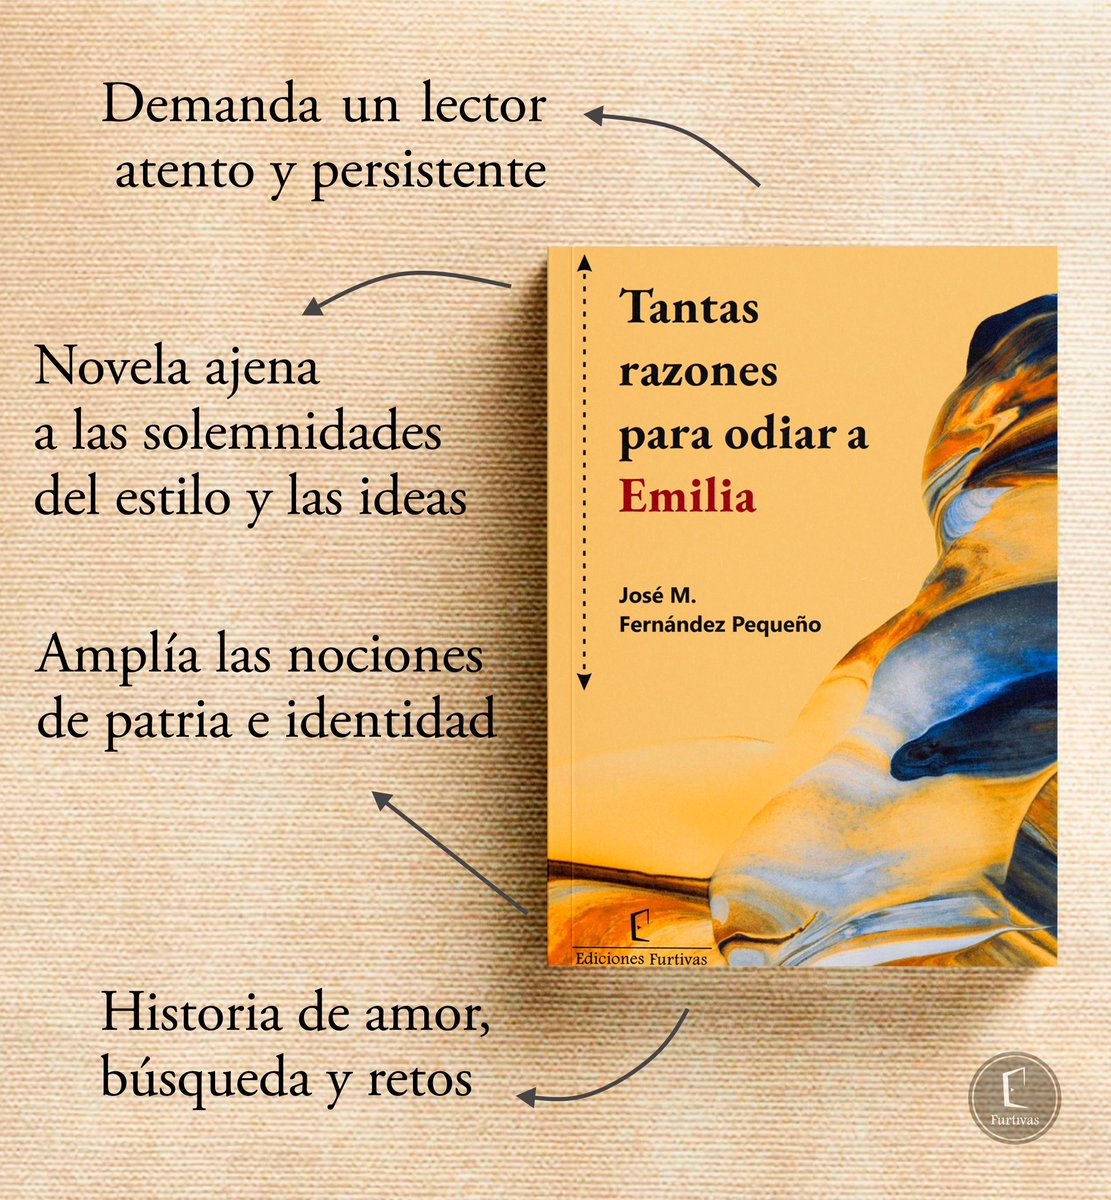 Te invitamos a que descubras por qué hay tantas razones para leer este libro de José M. Fernández Pequeño.

Link de compra: a.co/d/5Rx53WI

#tantasrazonesparaodiaraemilia
#fernándezpequeño #narrativacubanacontemporánea
#escritorescubanos #librosrecomendados